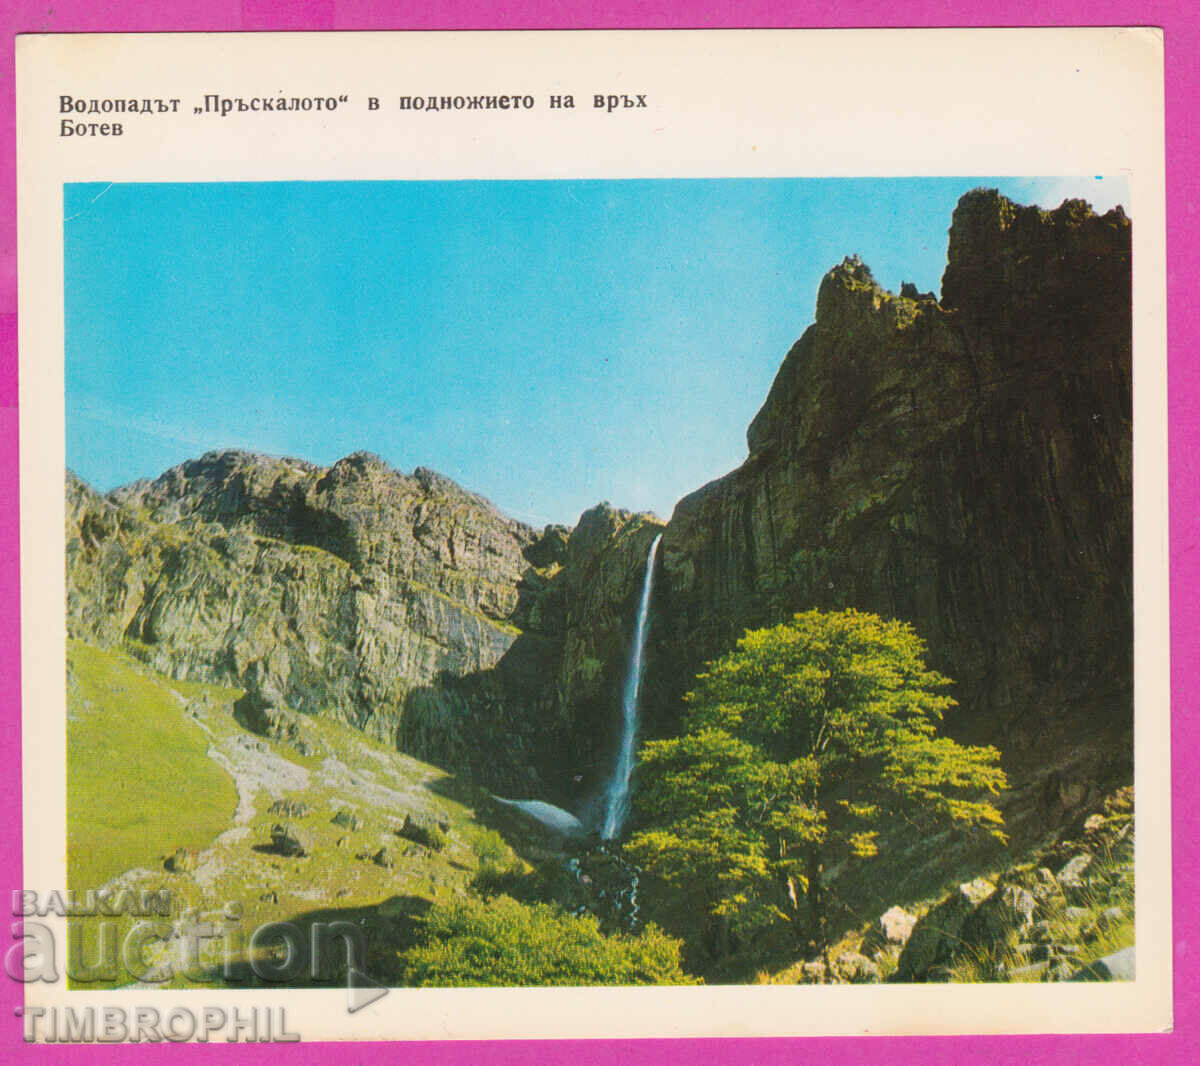 274567 / Водопадът Пръскалото в подножието на връх Ботев